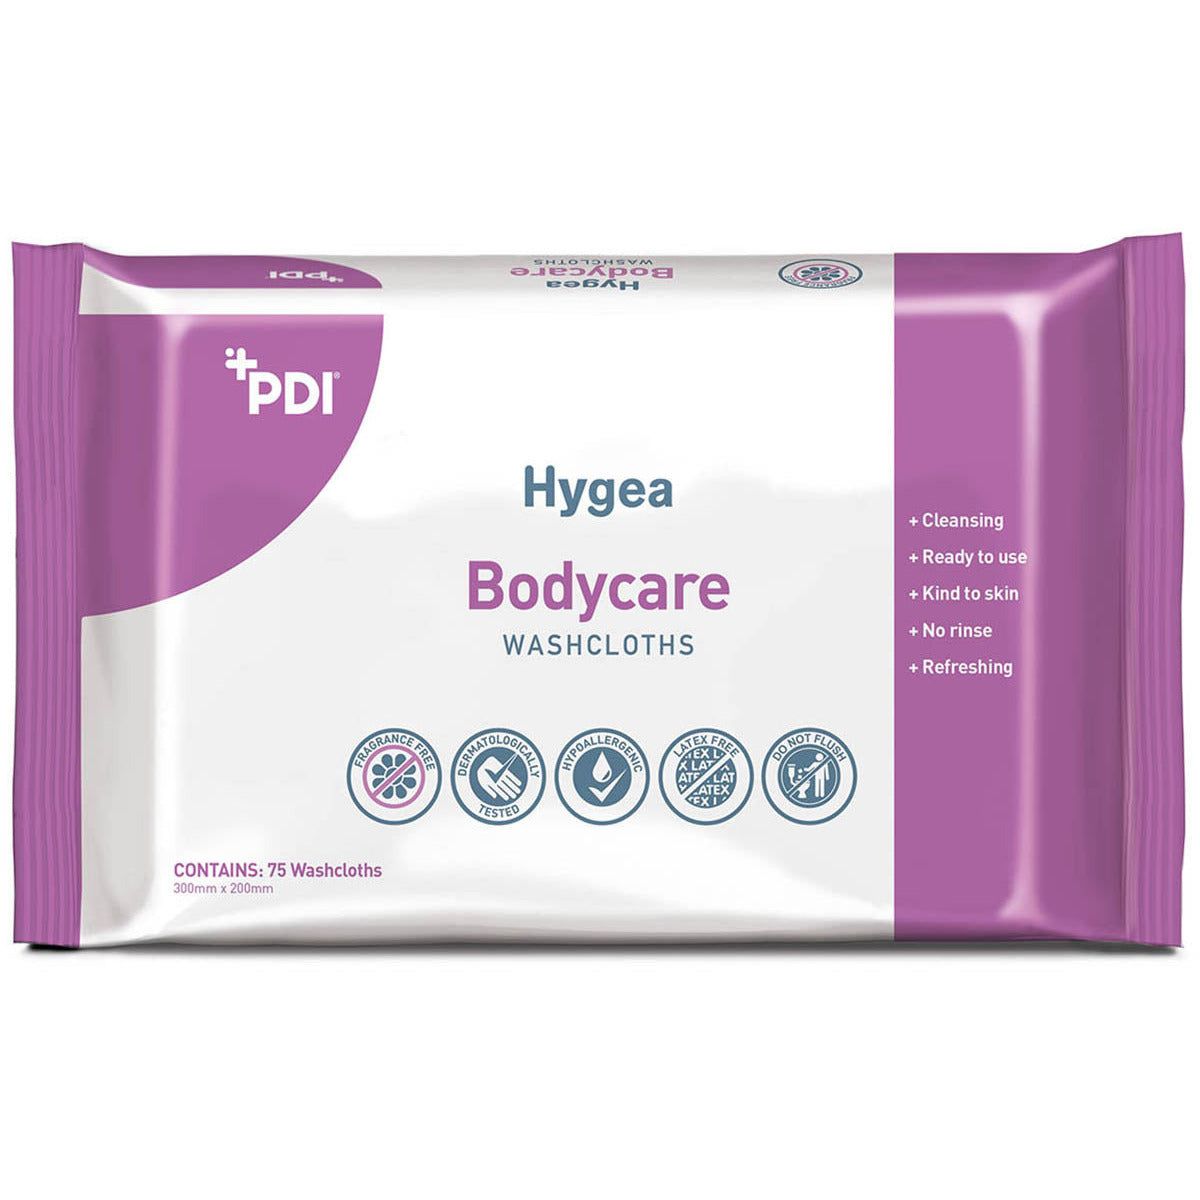 Hygea Bodycare Wipes - Flow Wrap